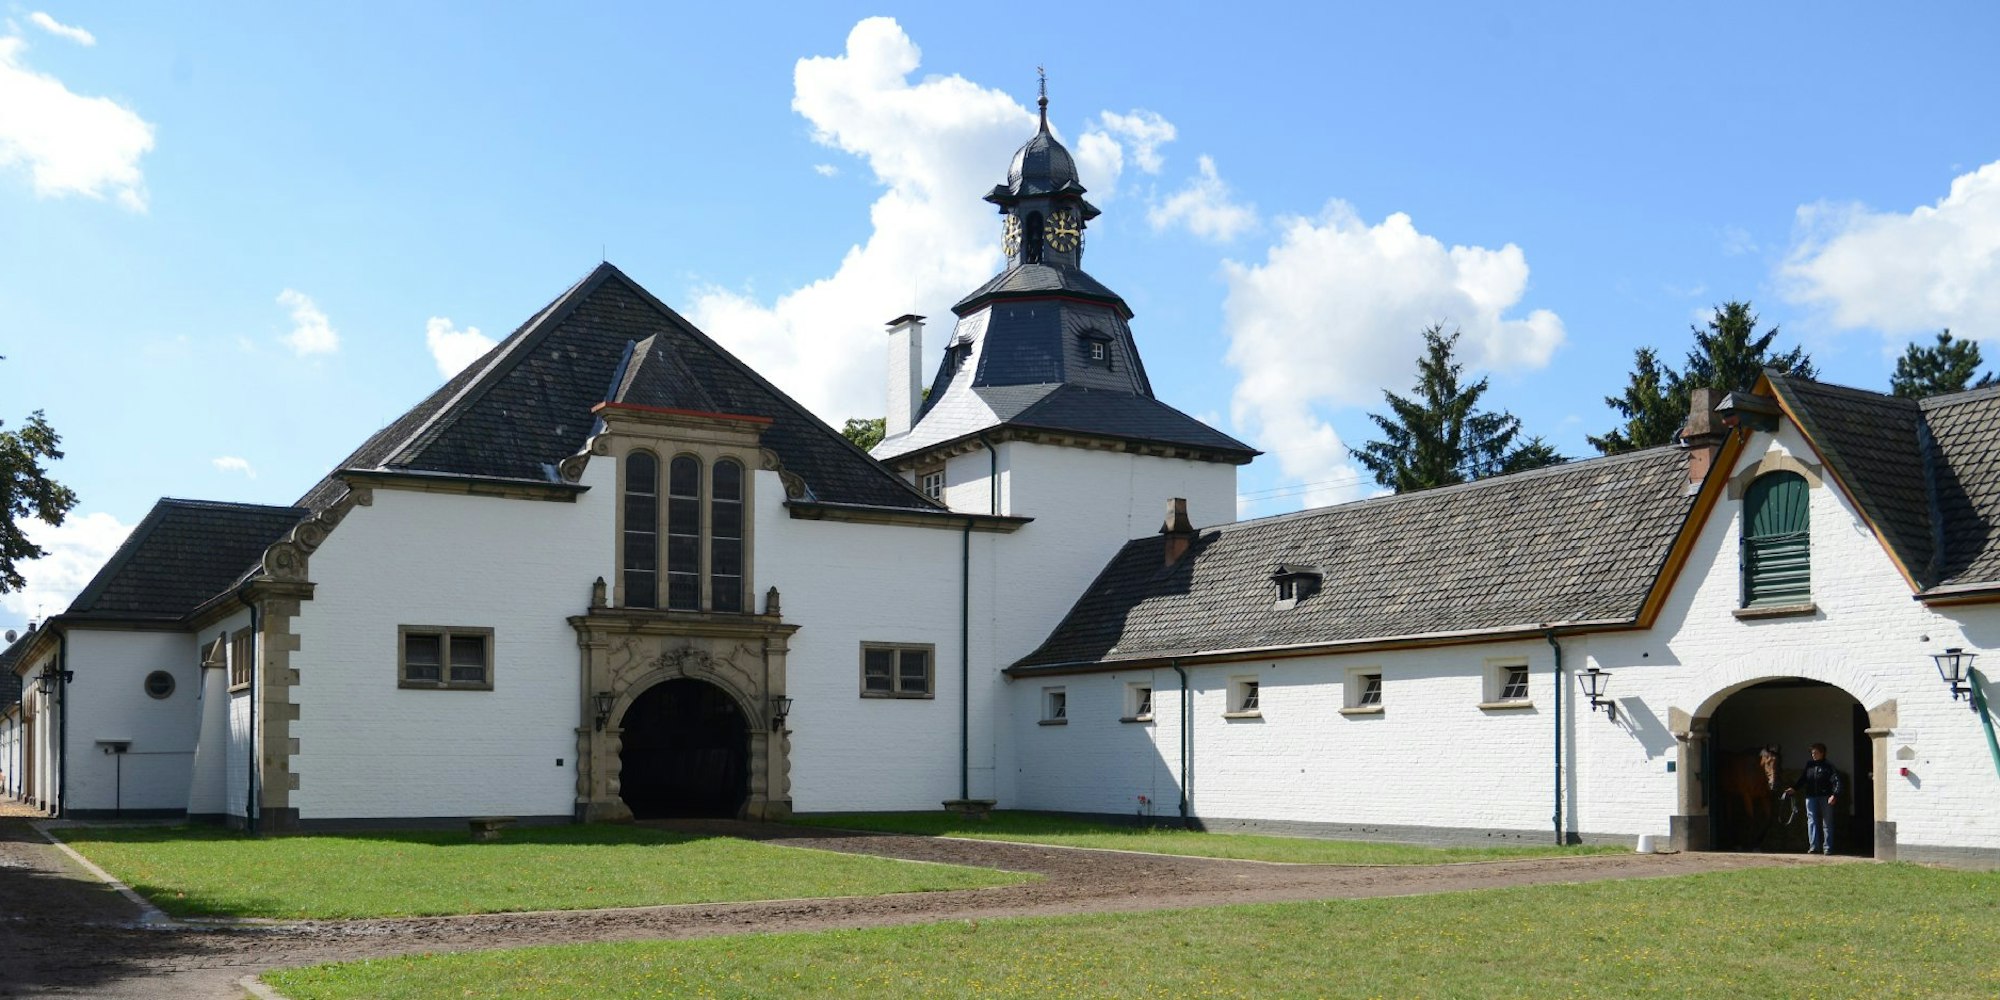 Das Gestüt Röttgen: Die komfortable Unterkunft für wertvolle Rennpferde gleicht einem Gutshof. Rechts befinden sich die Ställe für Hengste, im linken Teil des Gebäudes ist die Reithalle untergebracht.